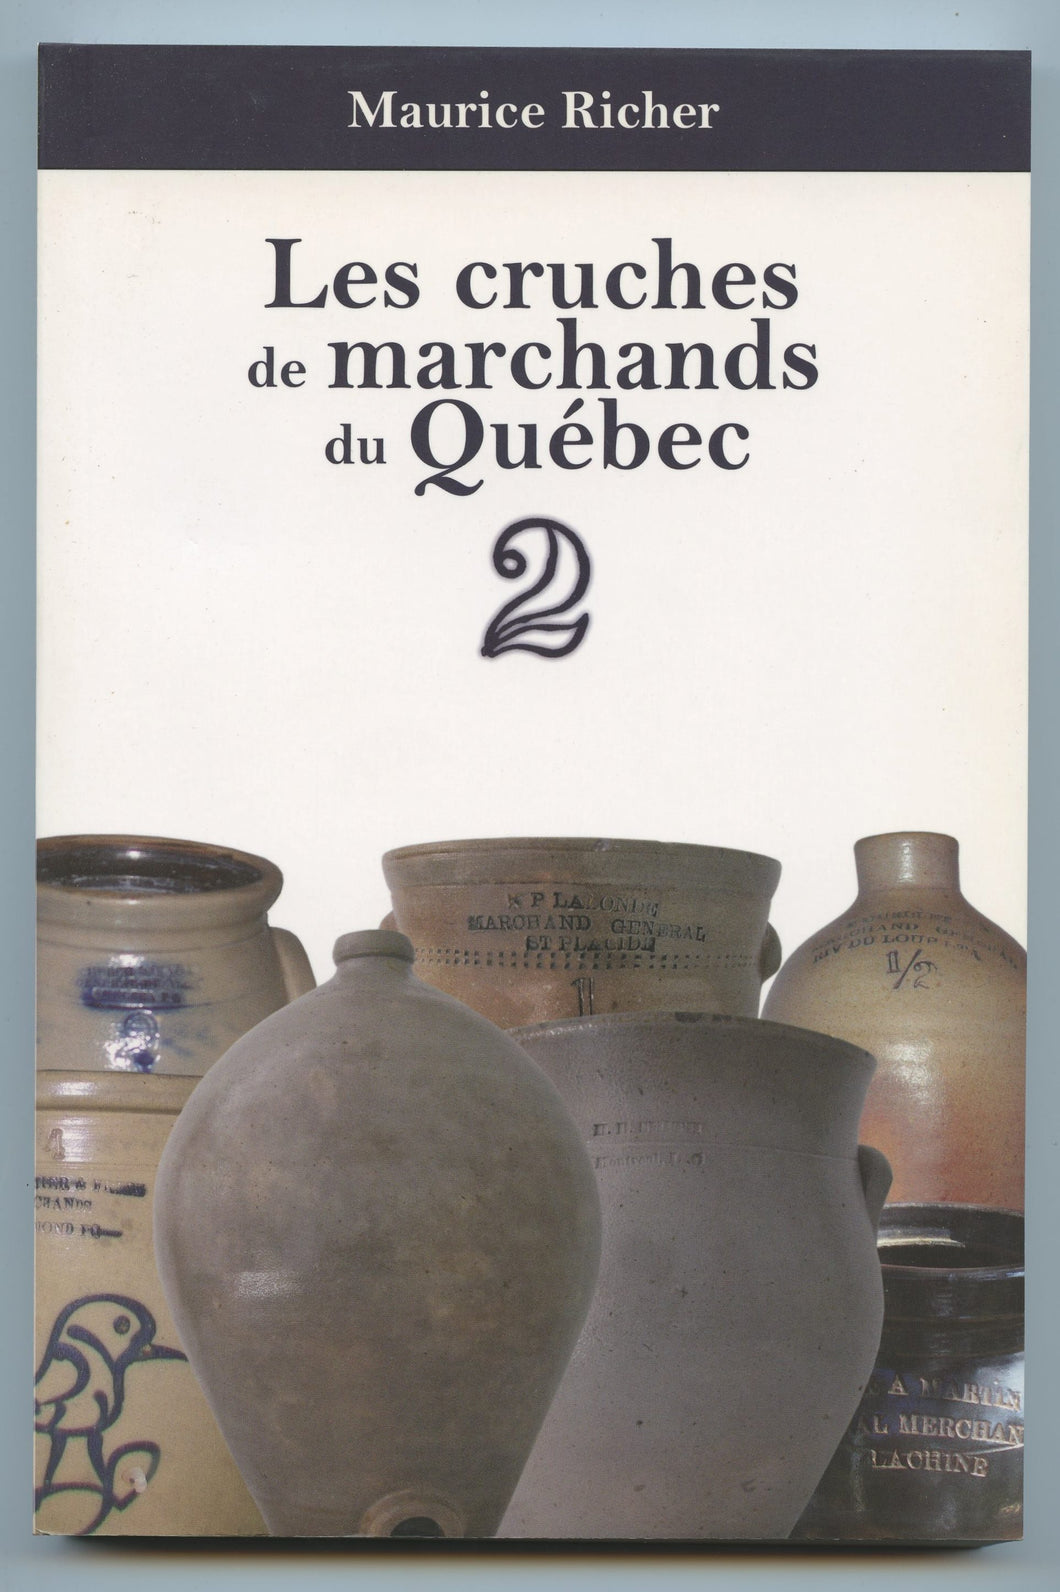 Les cruches de marchands du Québec 2